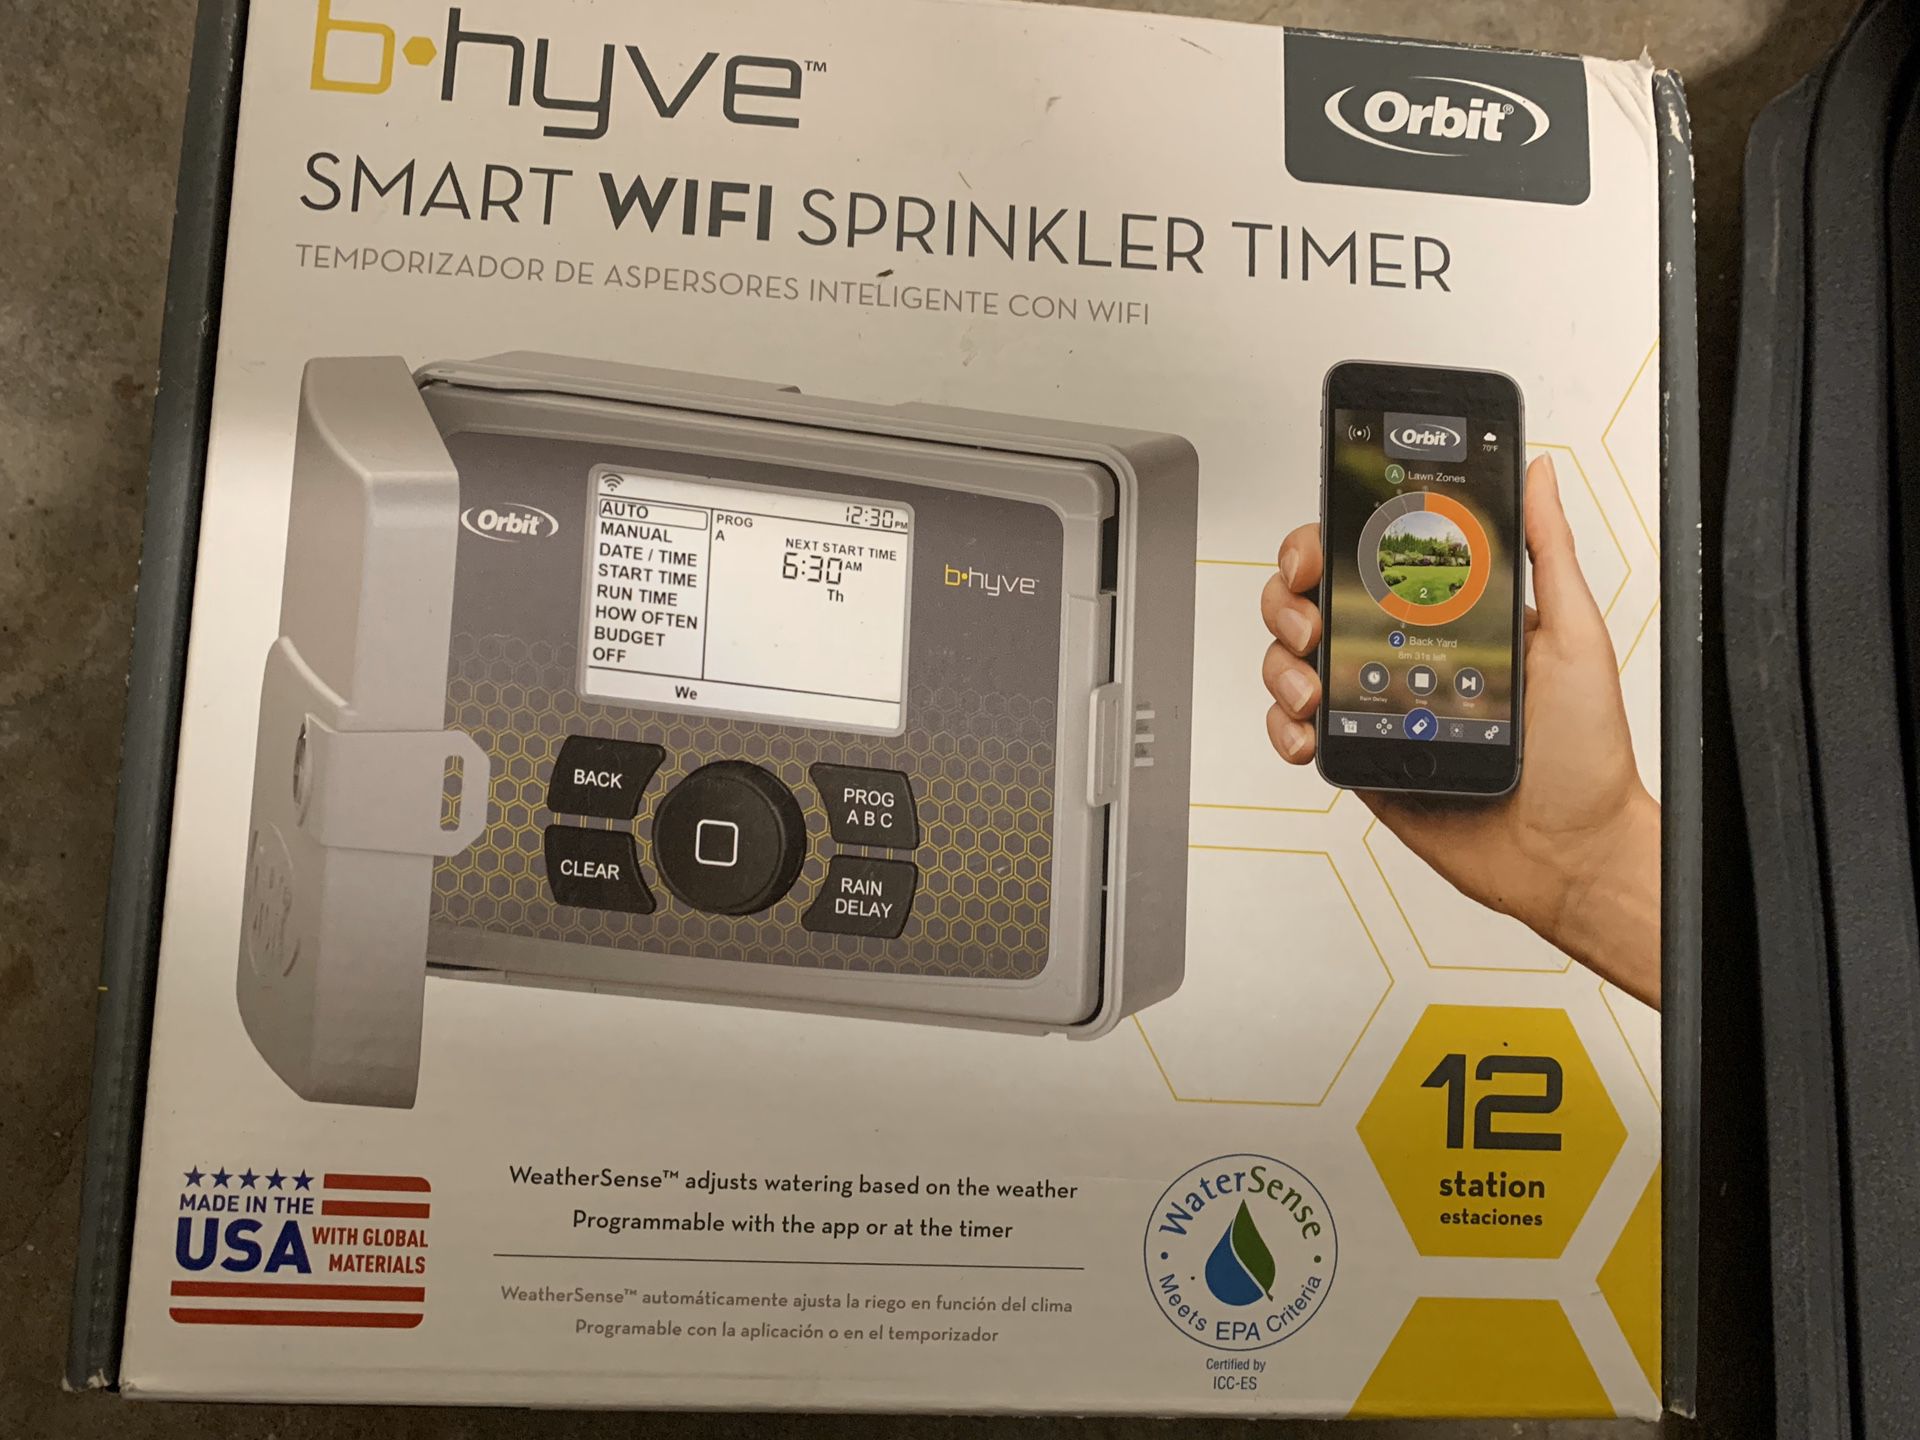 B-hyve Smart WiFi Sprinkler Timer - 12 station